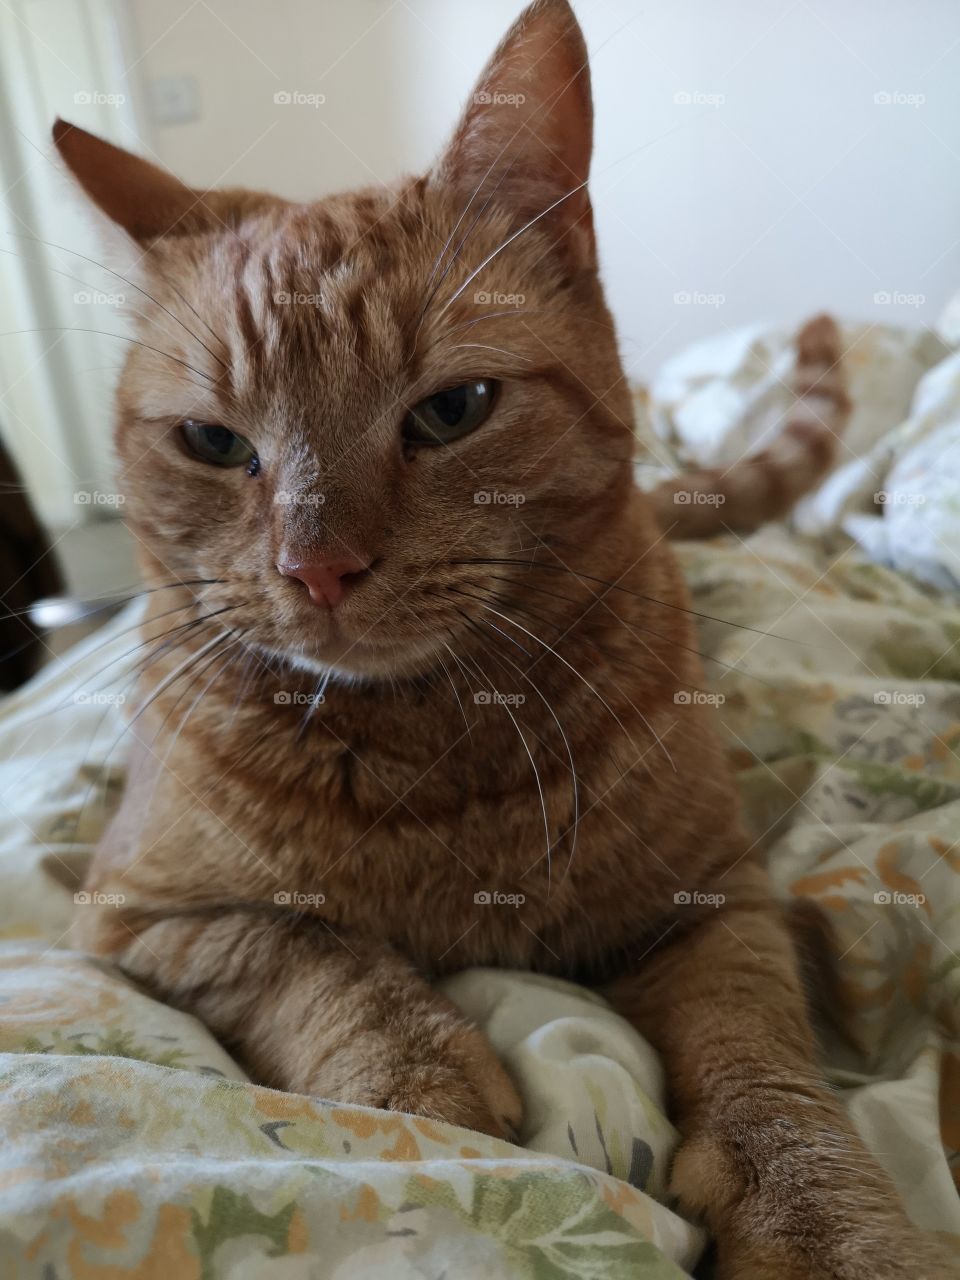 Dexter the ginger Tom cat